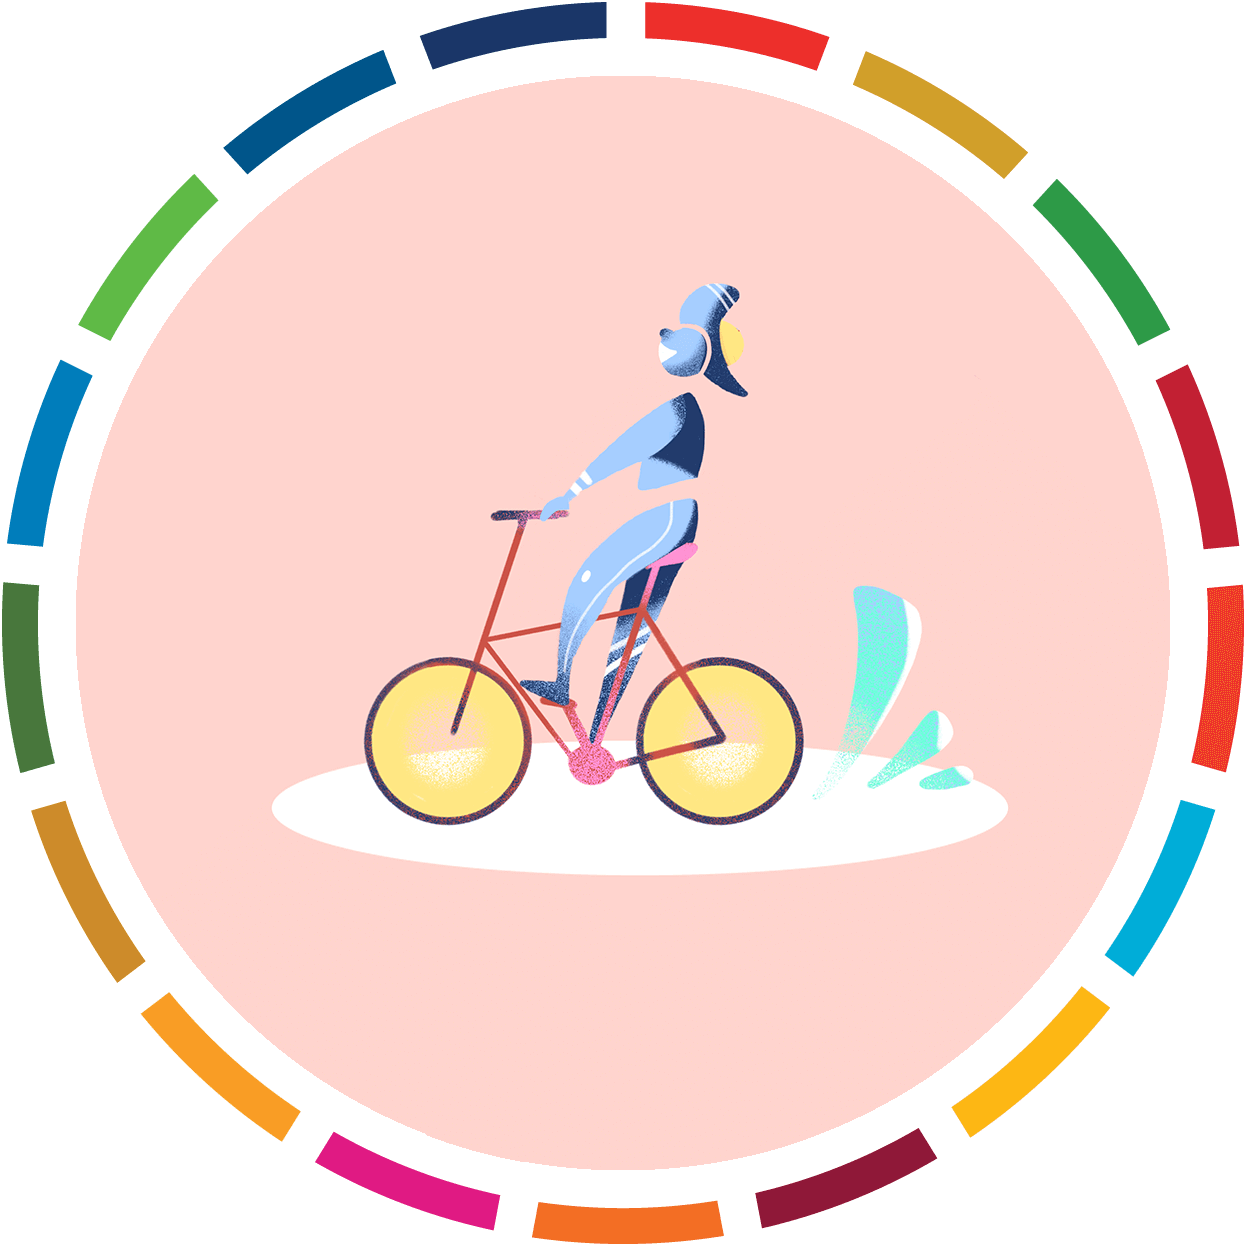 Composição gráfica: uma pessoa andando de bicicleta